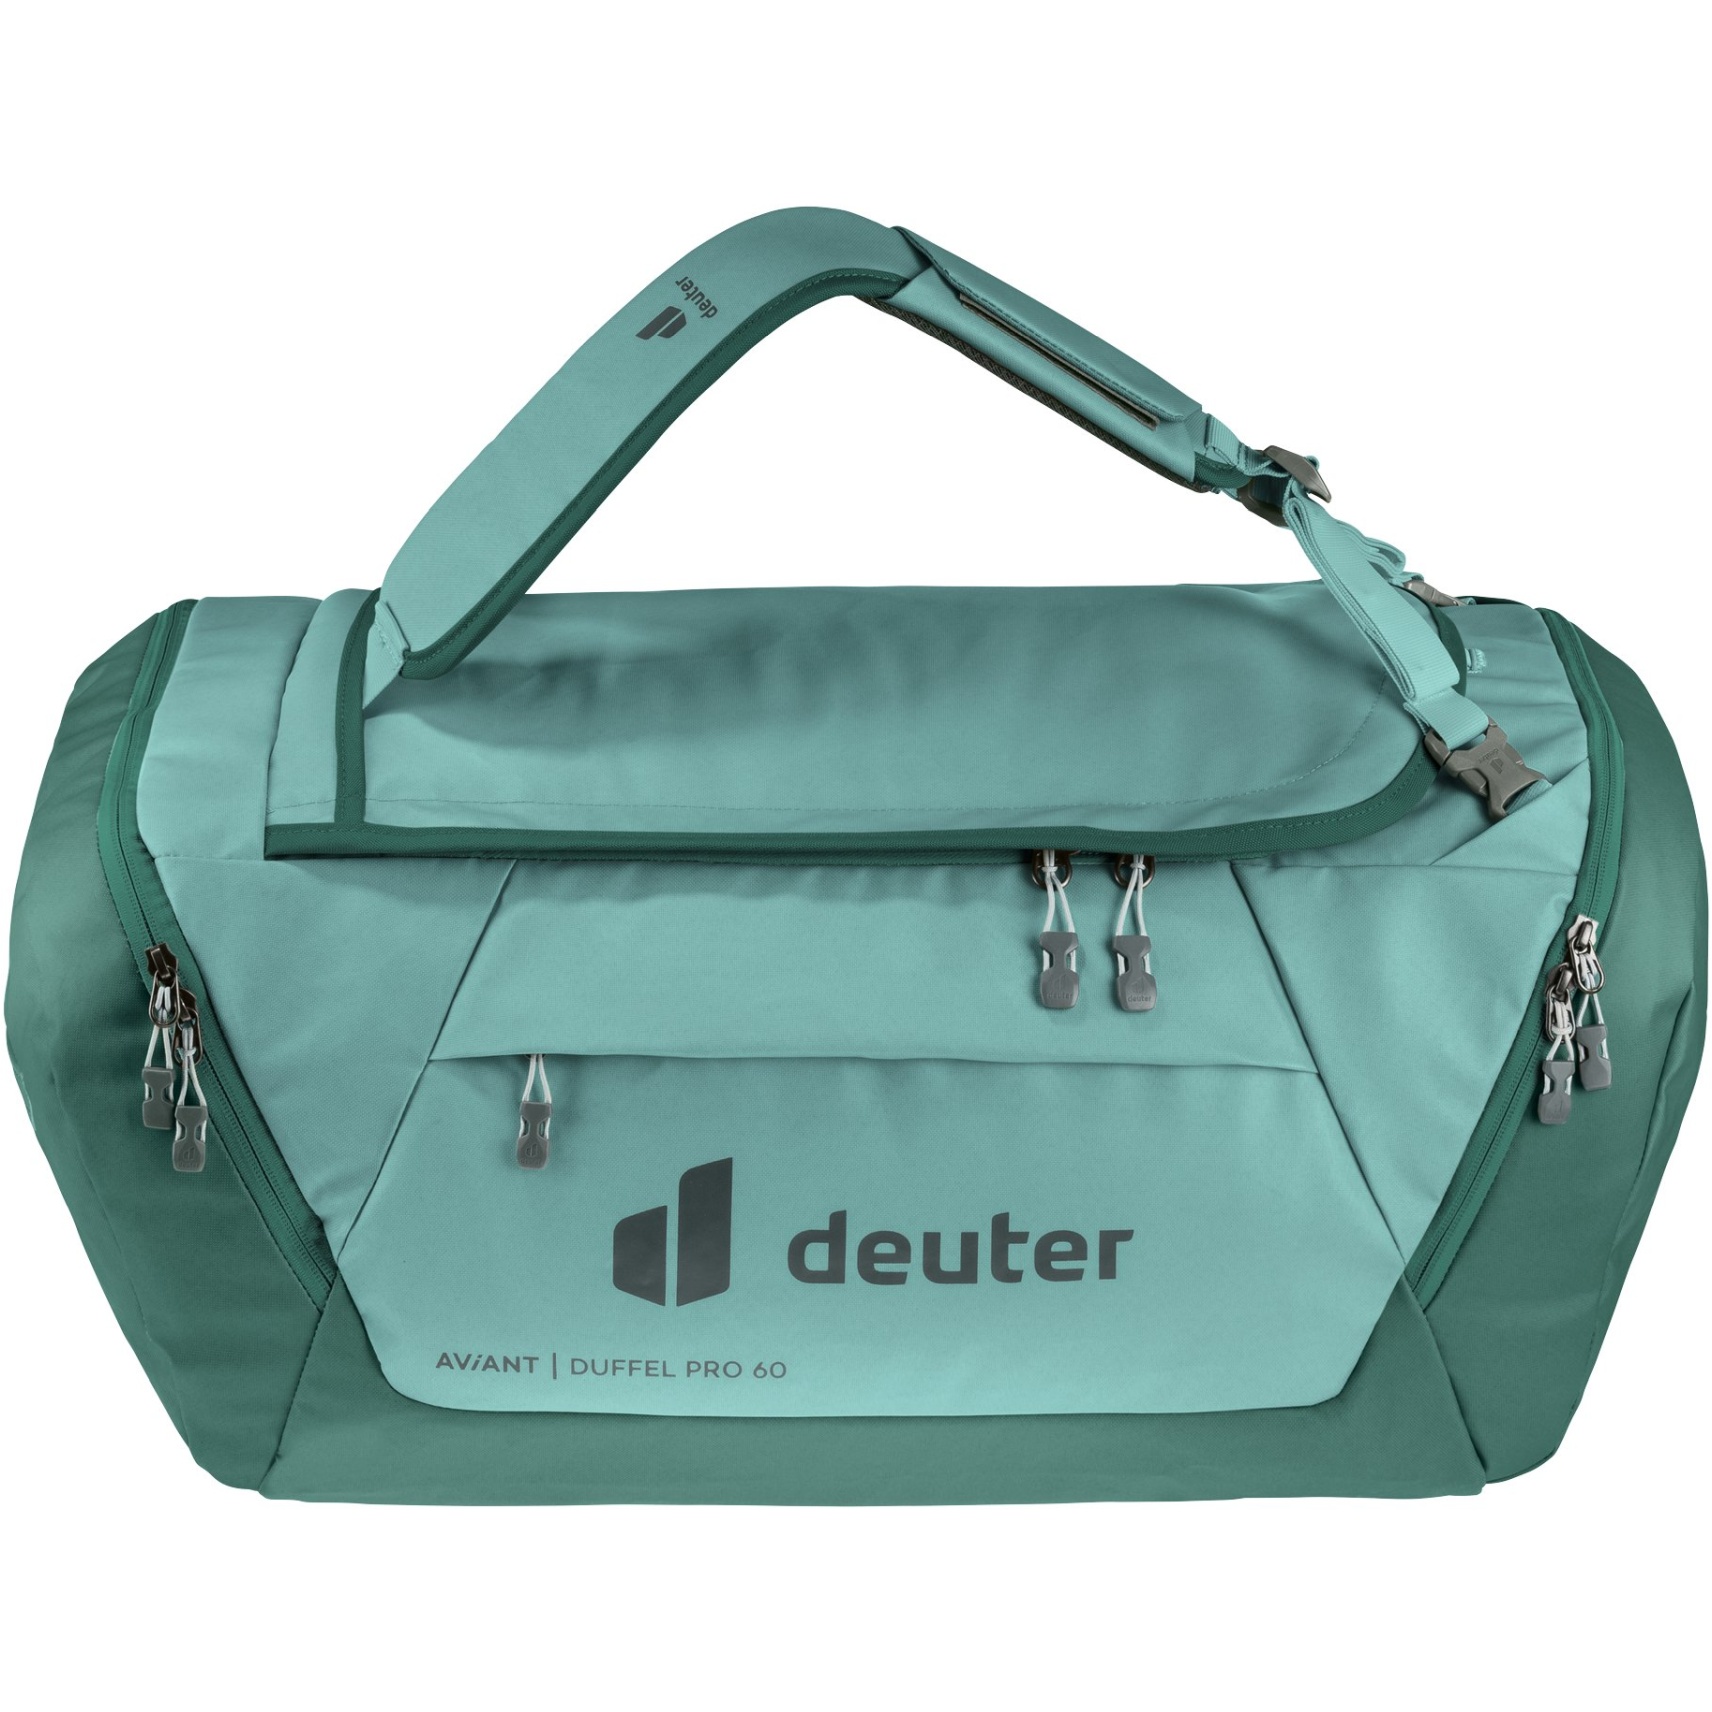 Productfoto van Deuter AViANT Duffel Pro 60 Sporttas - jade-seagreen